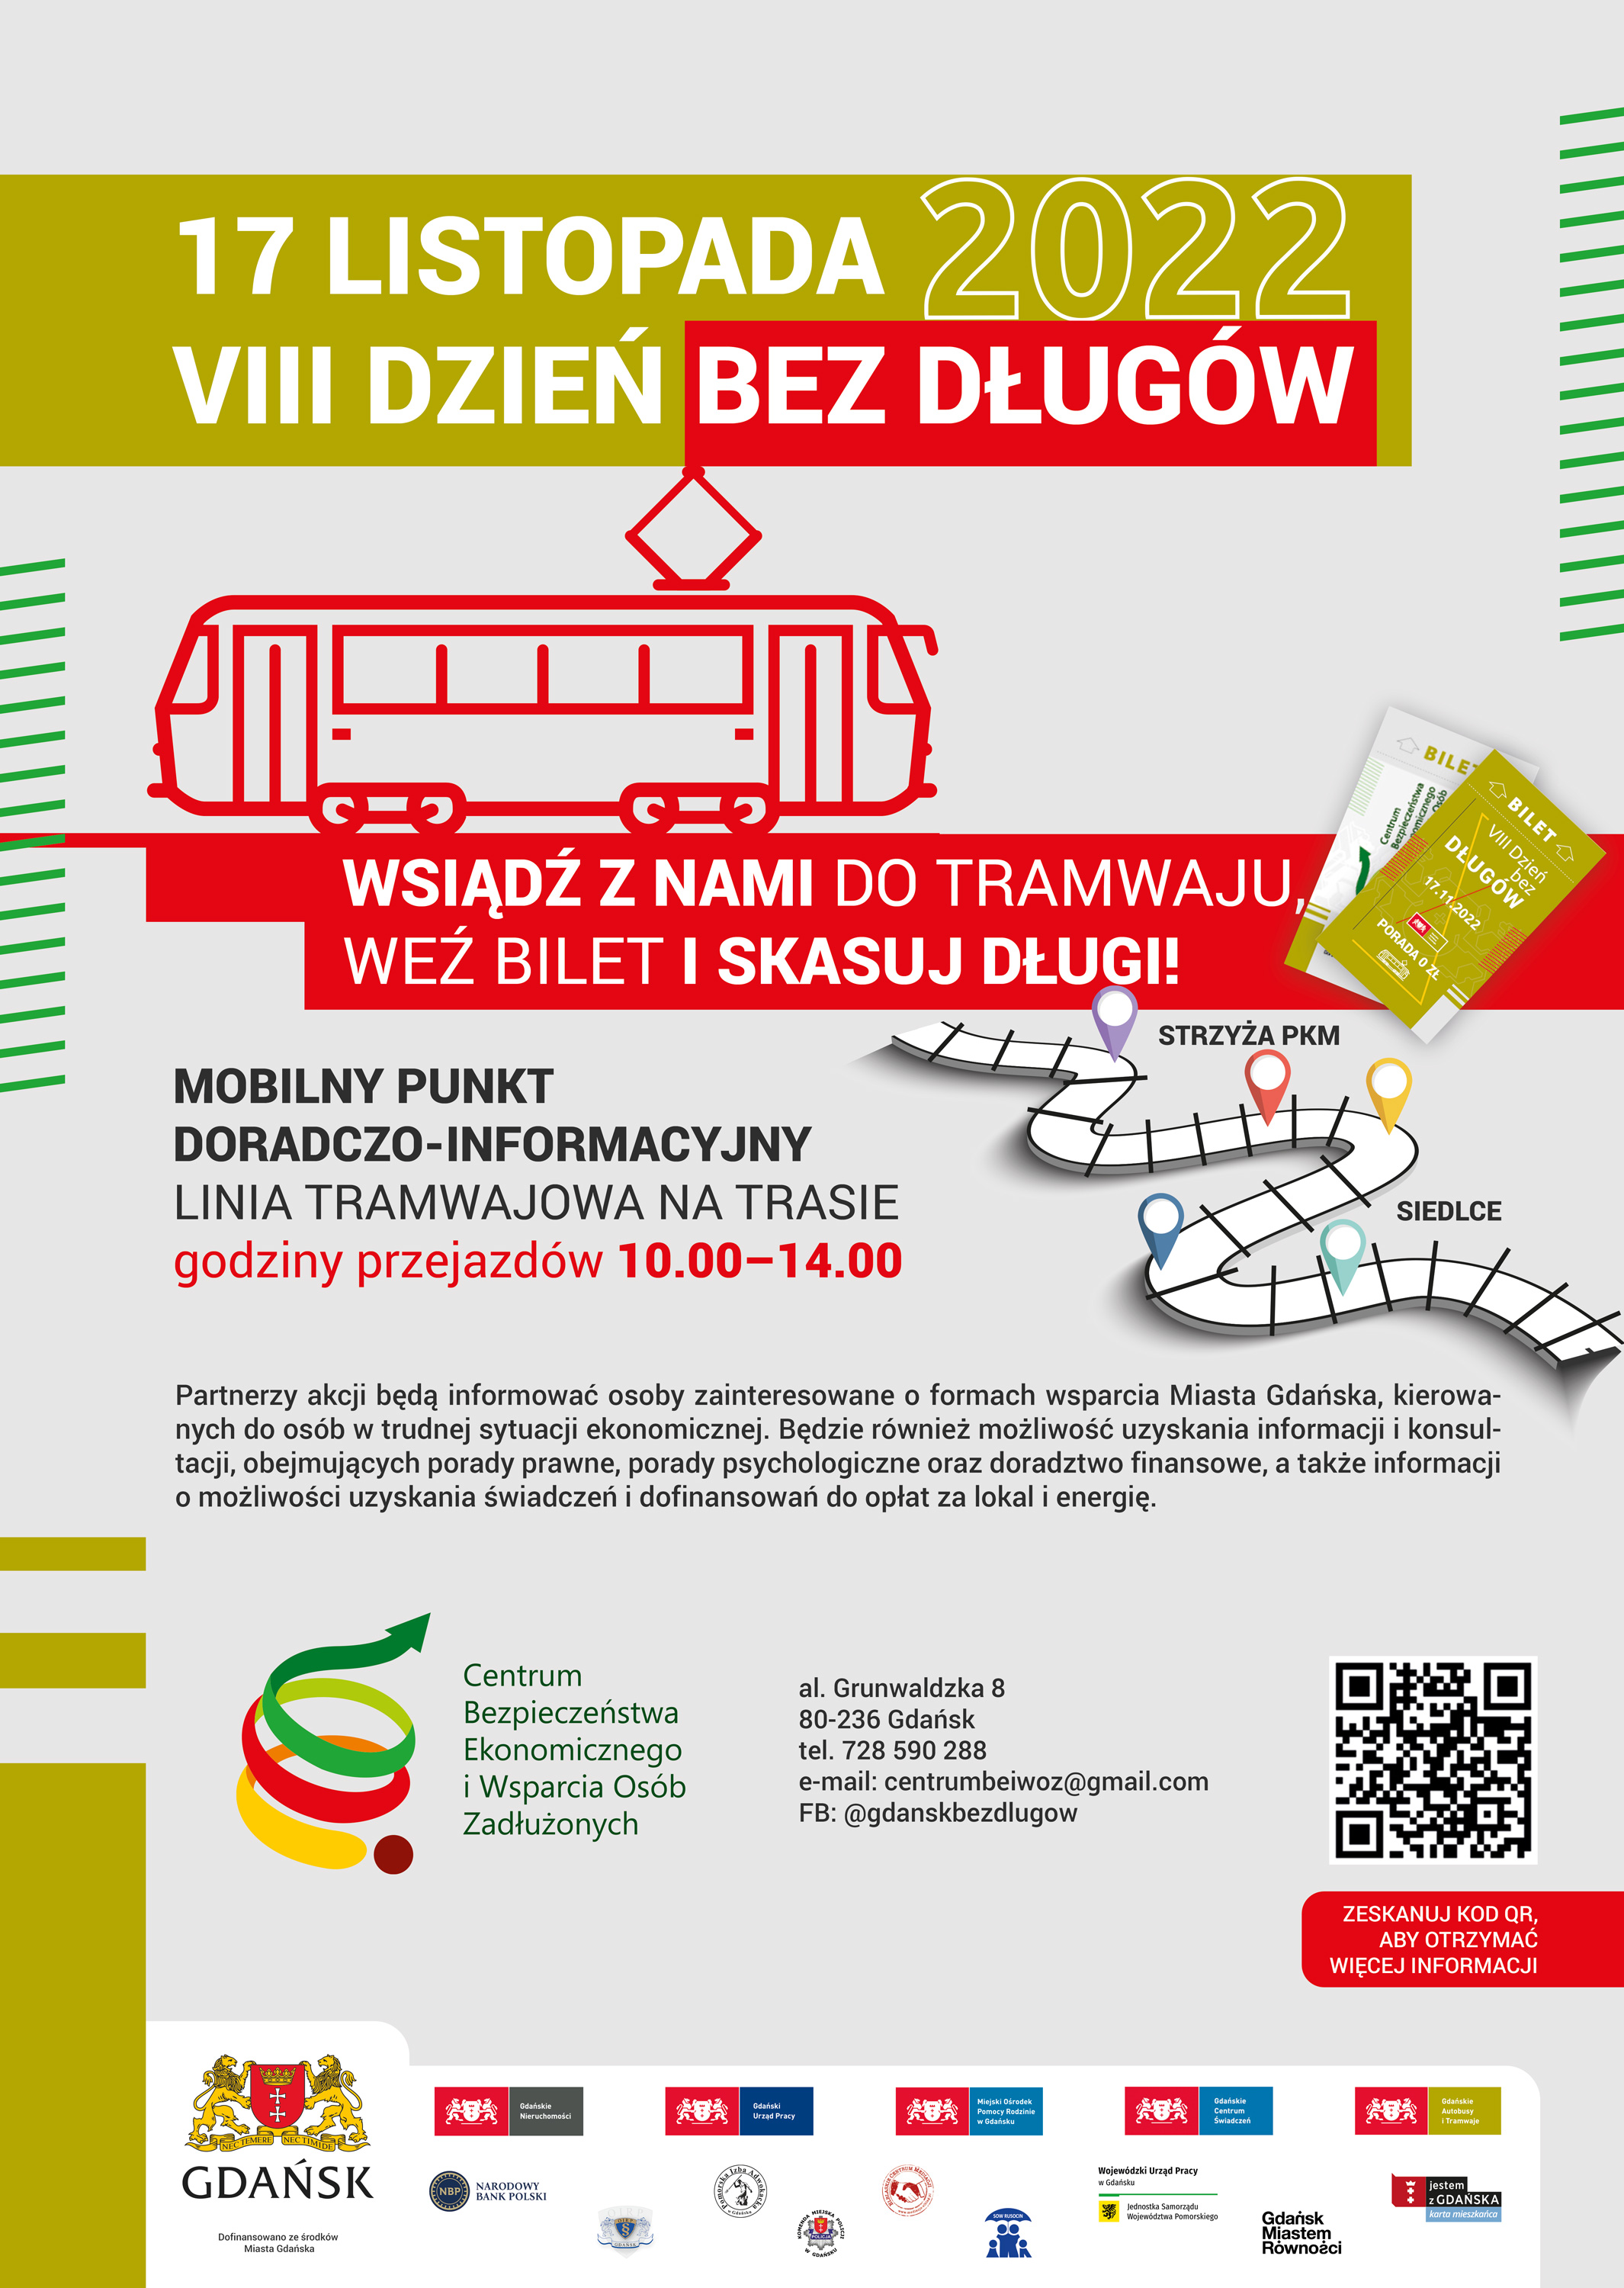 Napis u góry "17 listopada 2022 VIII Dzień bez Długów", poniżej informacja "Wsiądź z nami do tramwaju, weź bilet i skasuj długi!", ikona tramwaju, logotypy organizatorów i partnerów akcji.